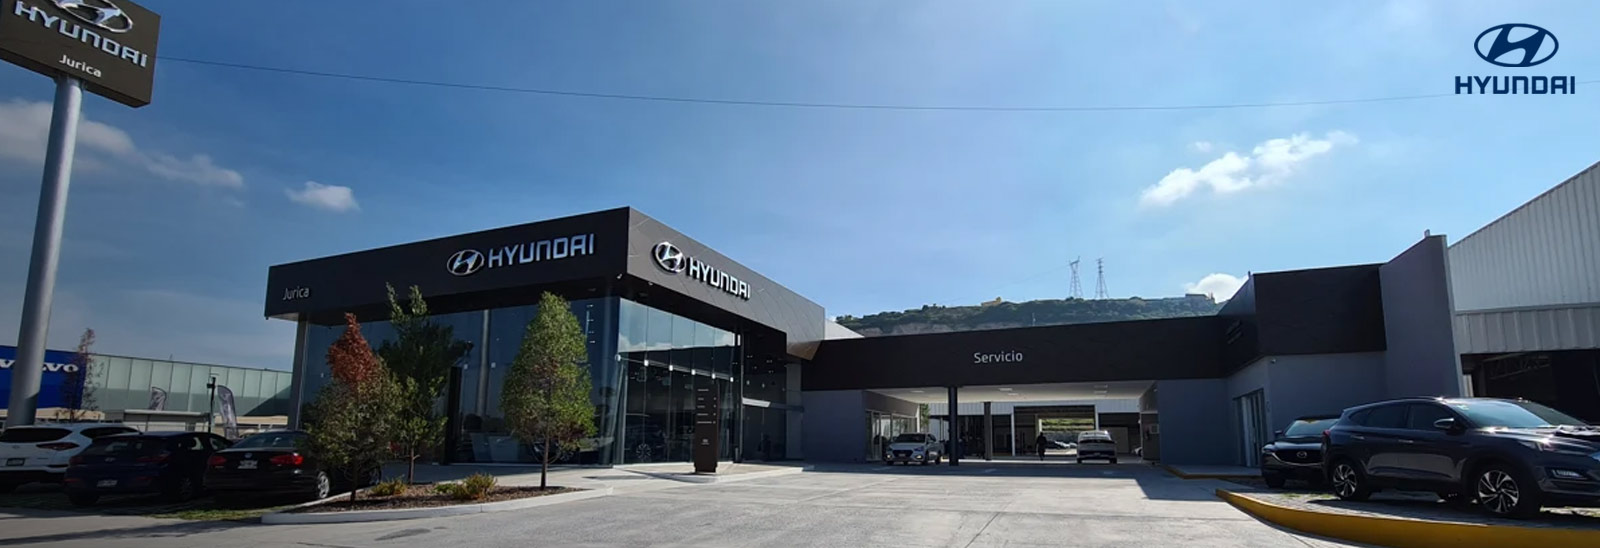 Hyundai Jurica nuevo distribuidor Hyundai